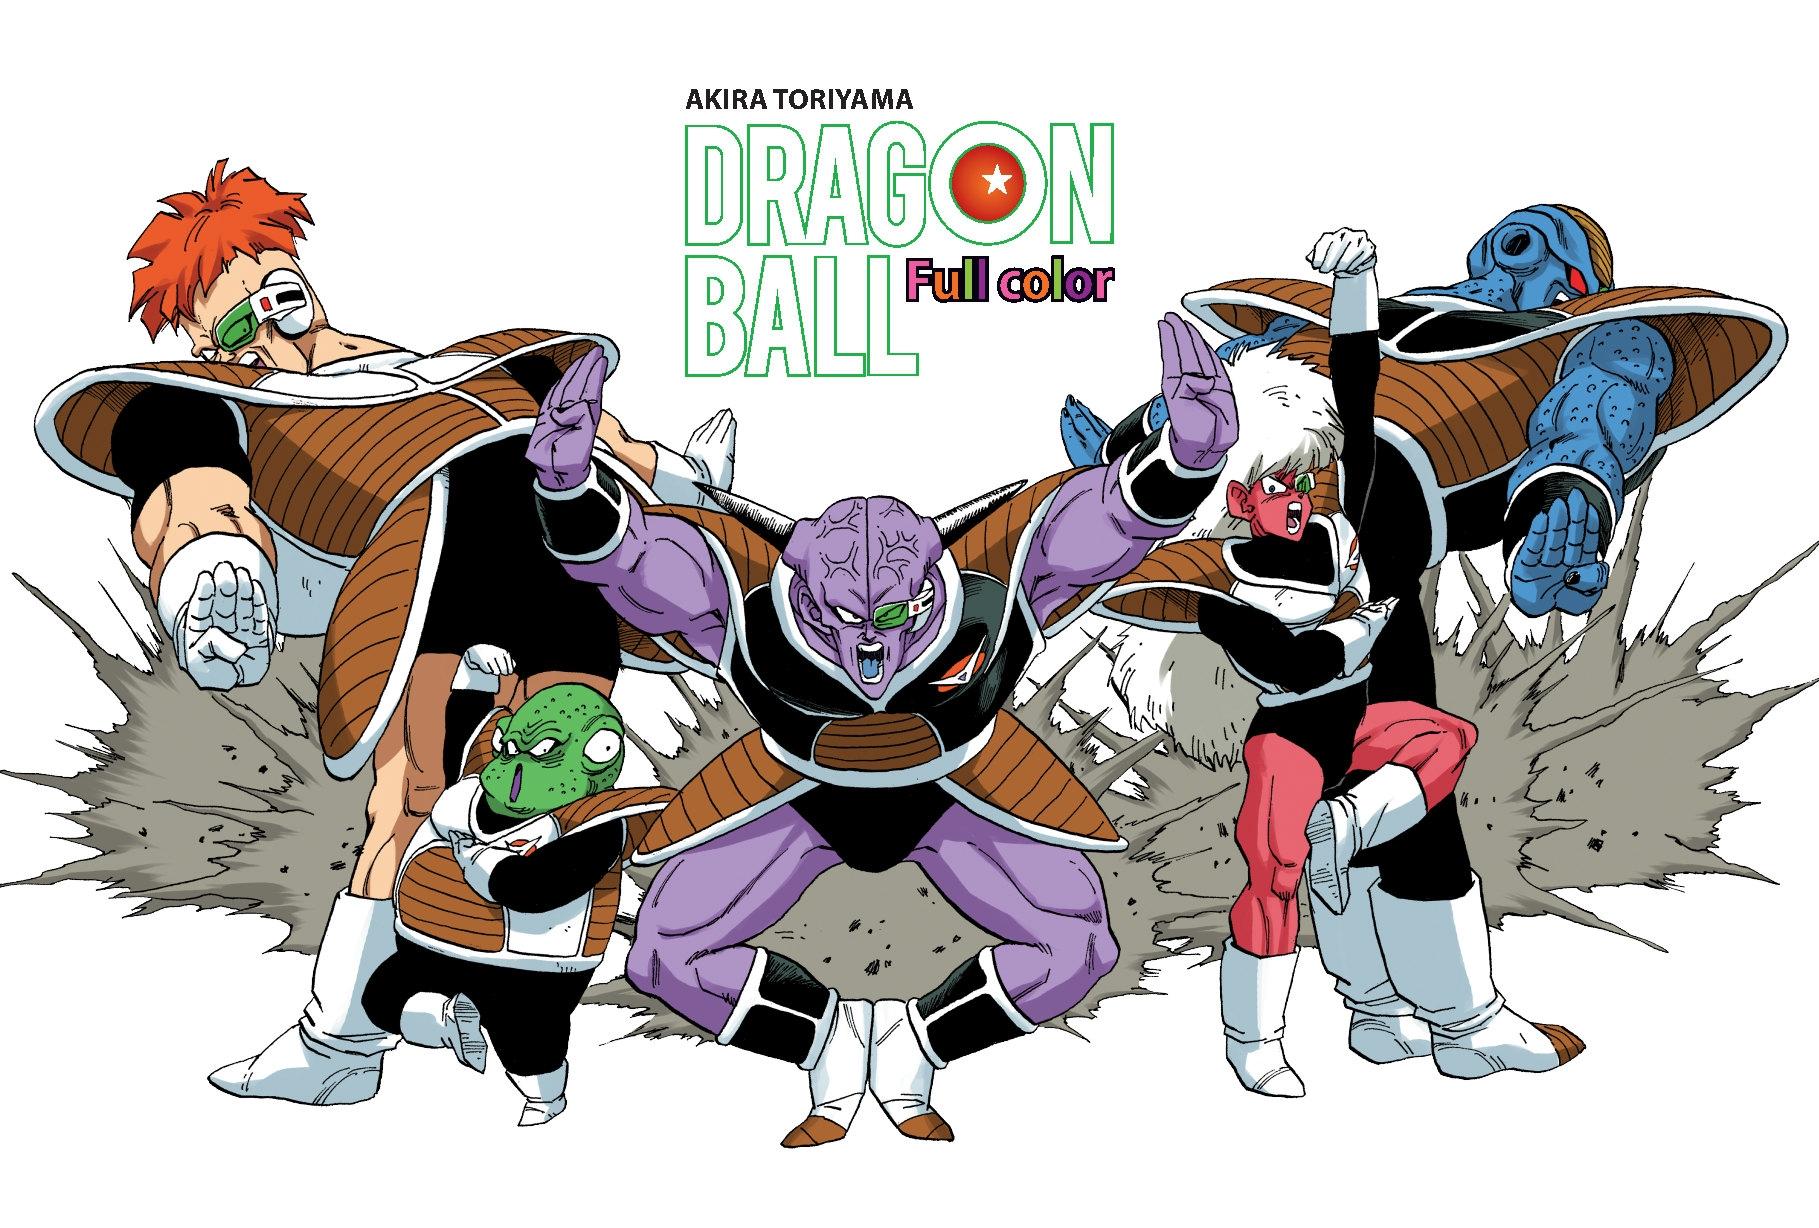 Dragon Ball Full Color - Phần Bốn: Frieza Đại Đế - Tập 2 - Tặng Kèm Ngẫu Nhiên 1 Trong 2 Mẫu Postcard